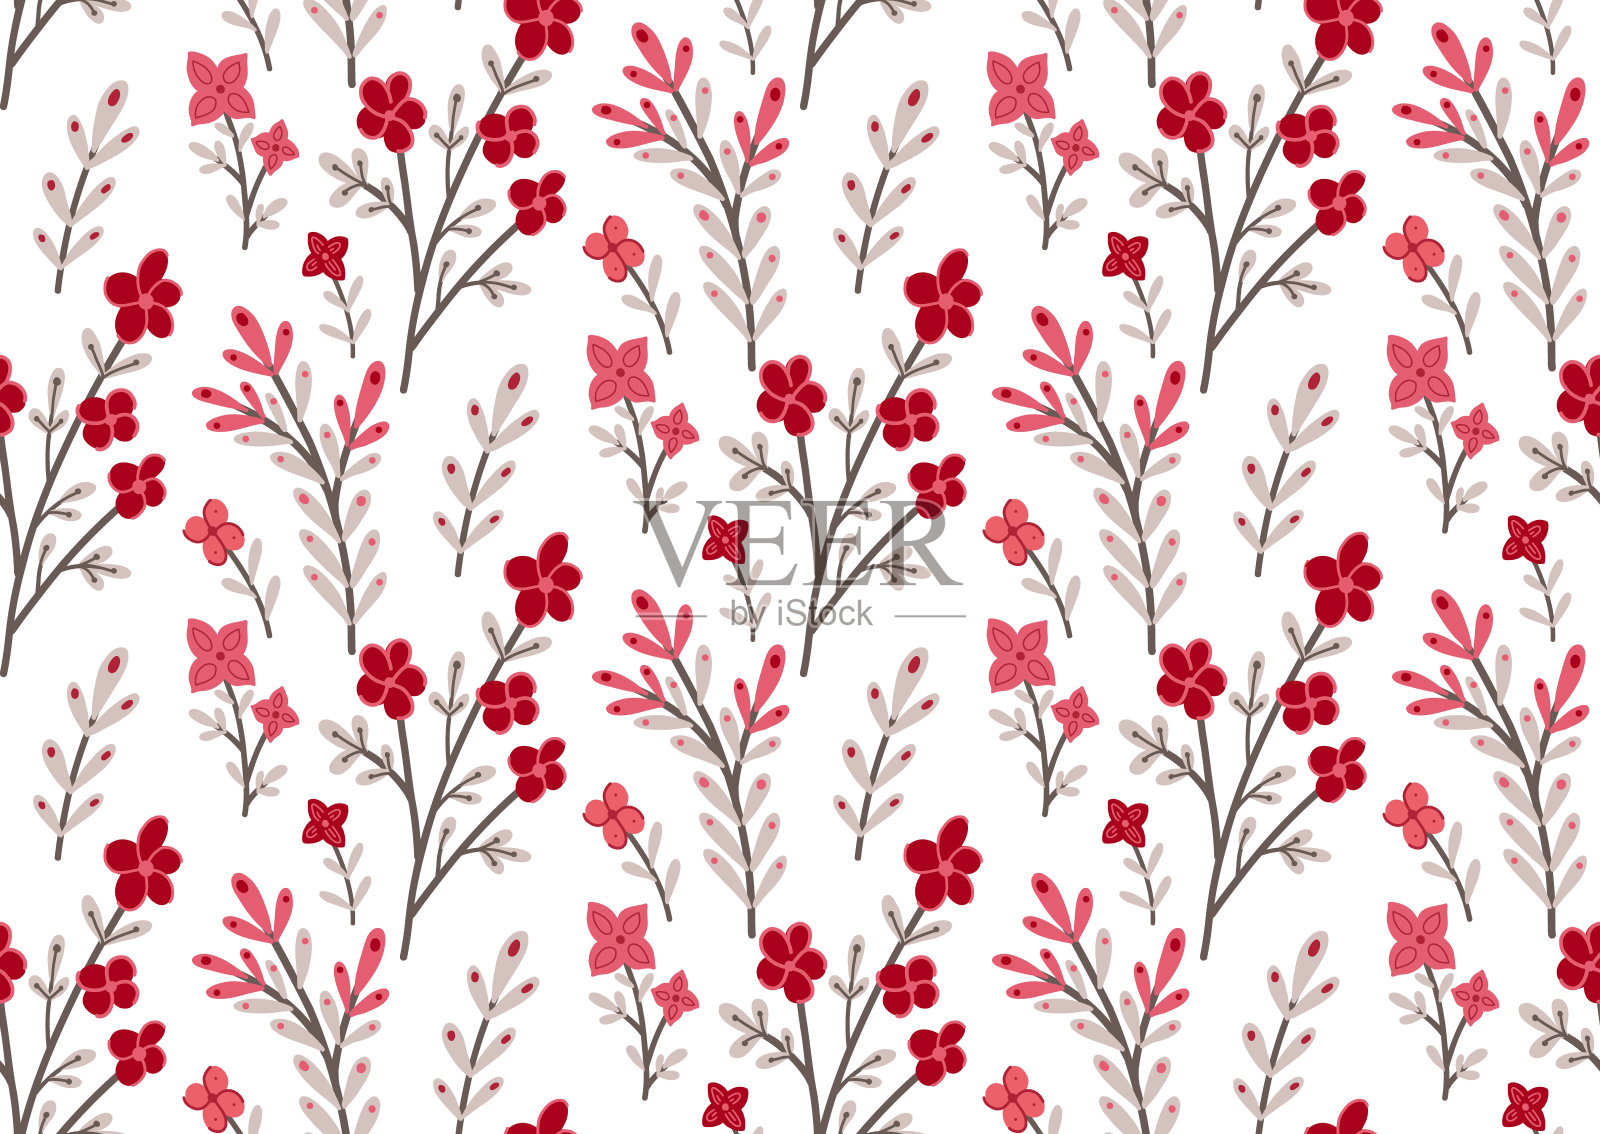 无缝模式与小粉红色的花在树枝上的白色背景。自然纹理与樱花枝。向量花卉图案的壁纸。精致的织物插画图片素材